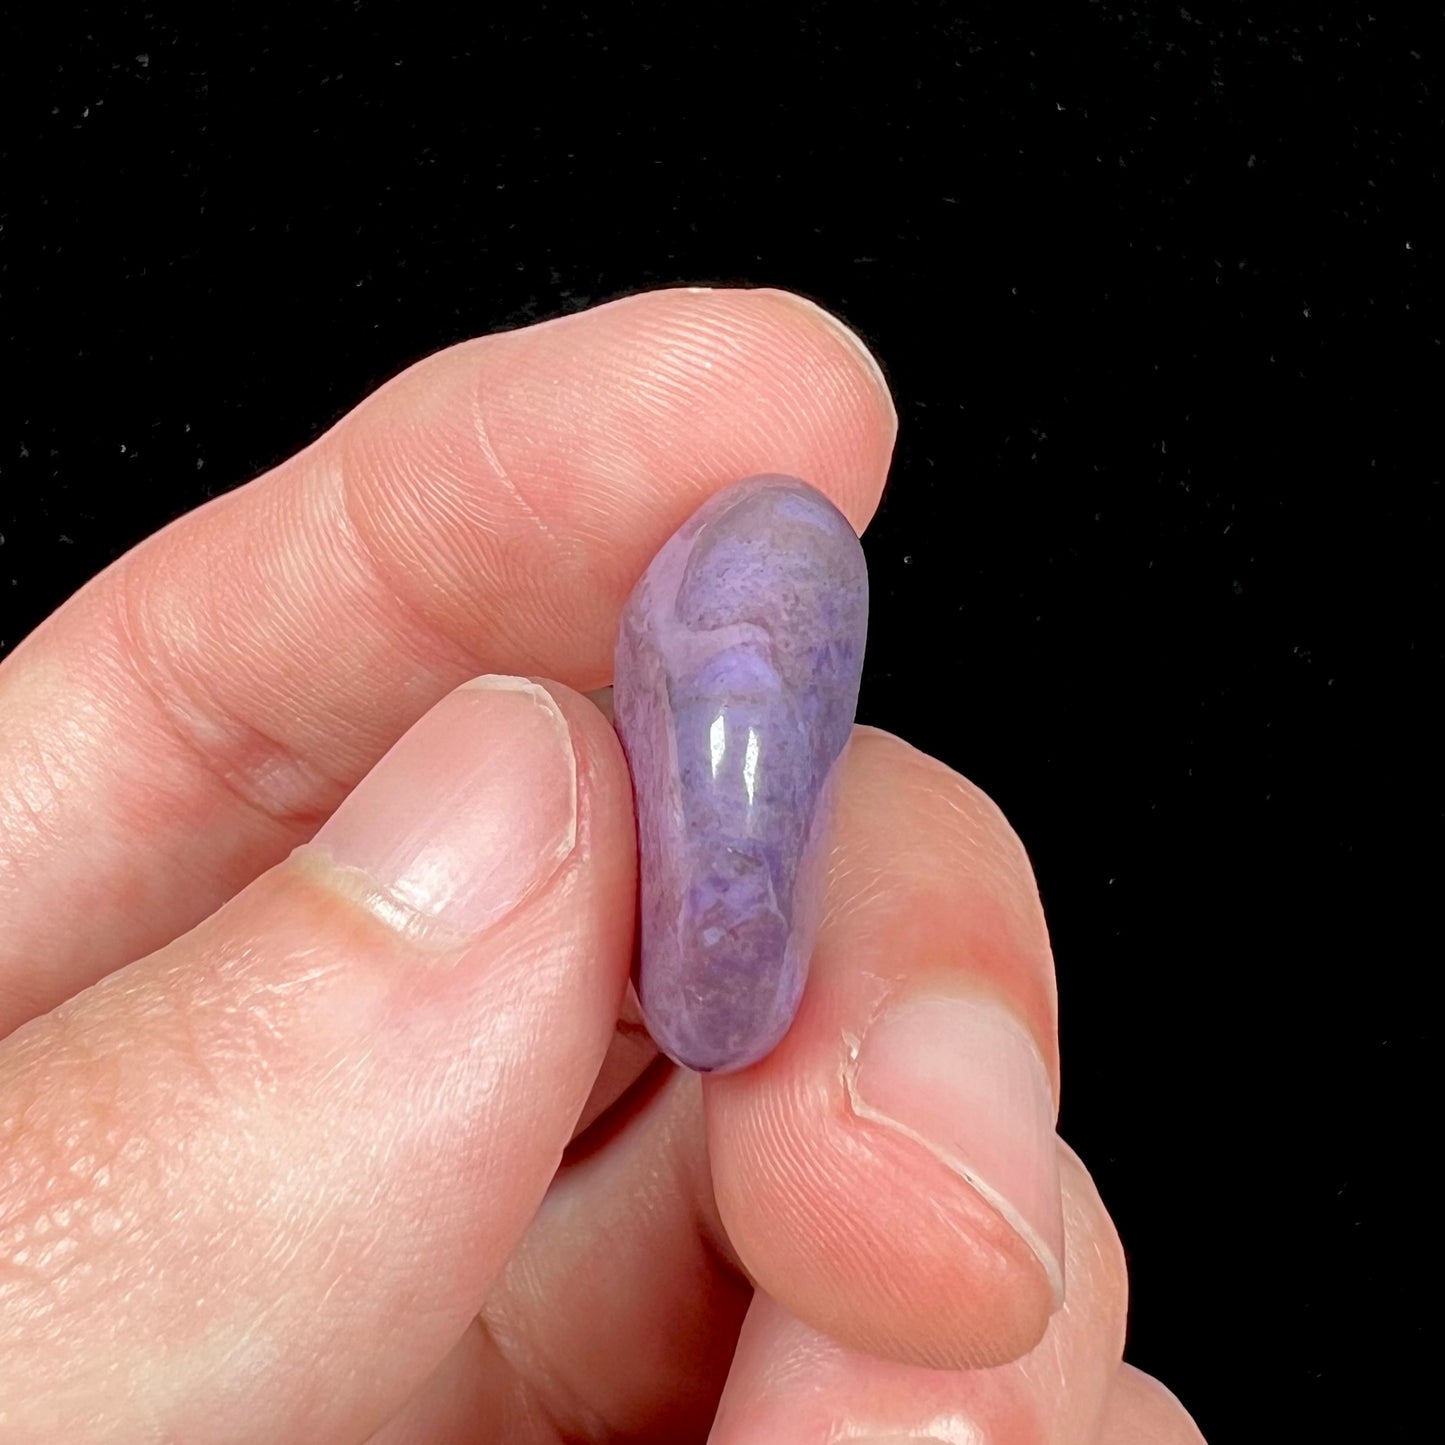 A tumbled, AAA grade, turkiyenite purple jade stone from Bursa, Turkey.